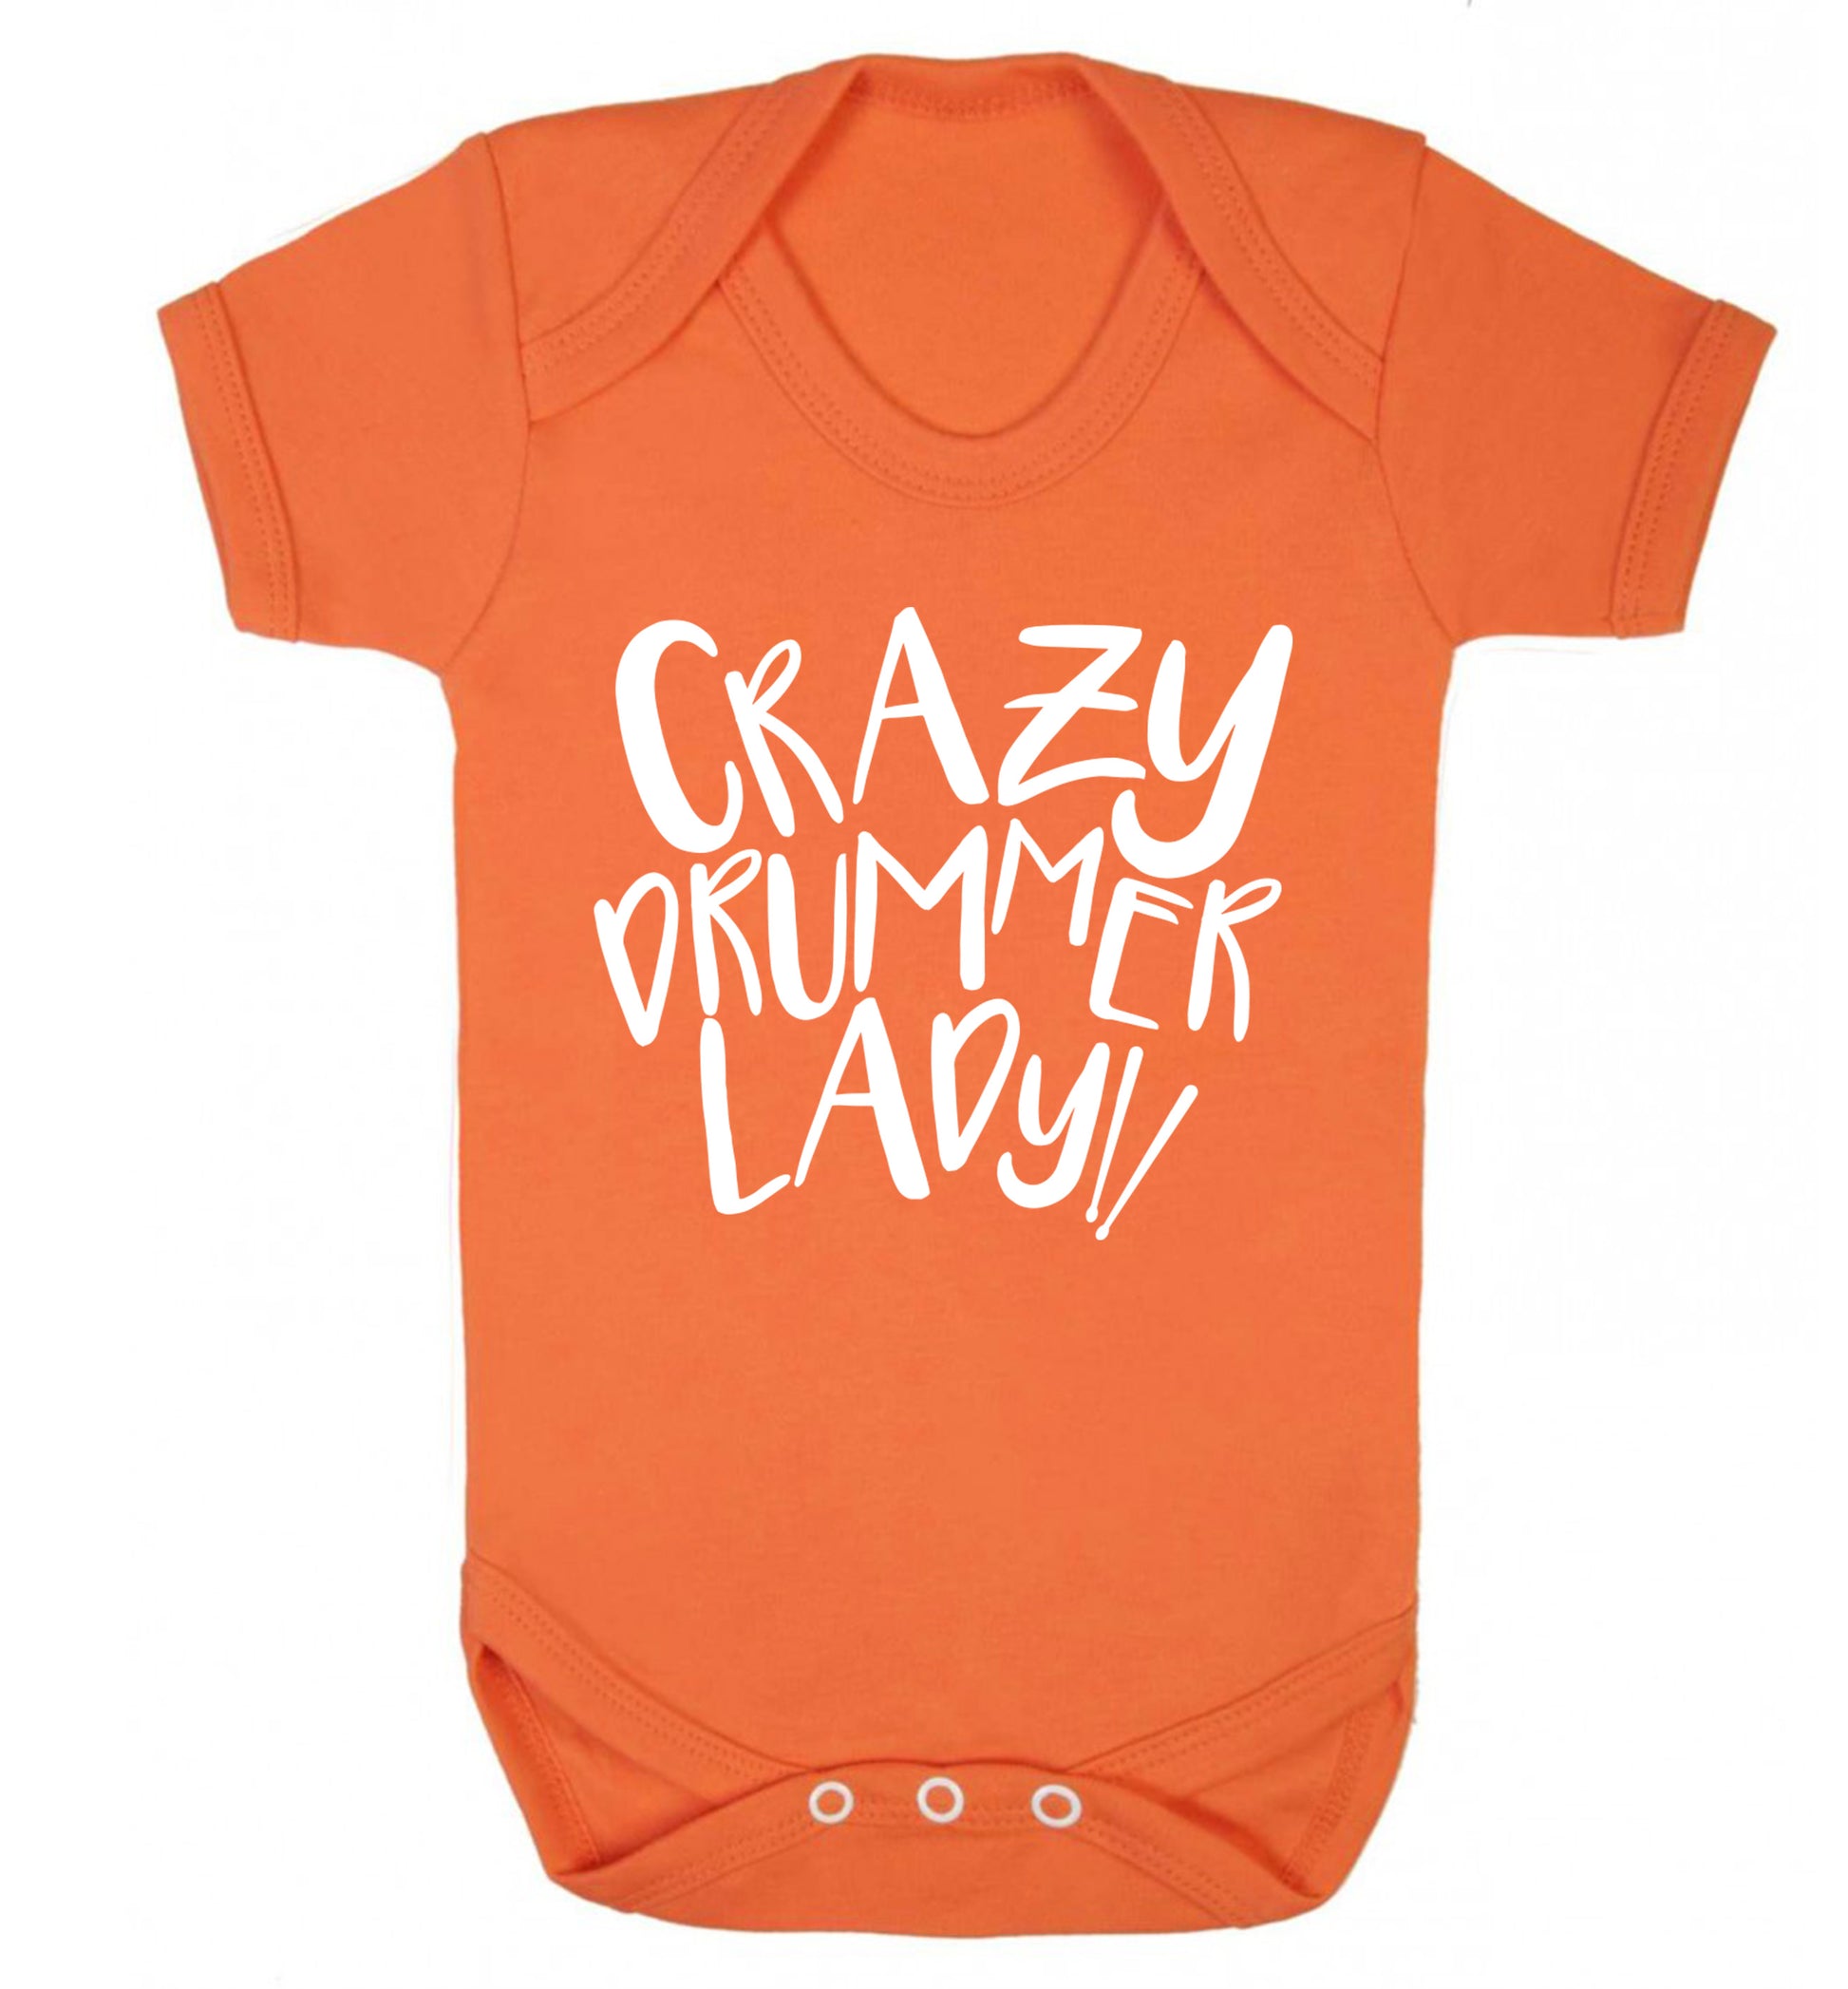 Crazy drummer lady Baby Vest orange 18-24 months